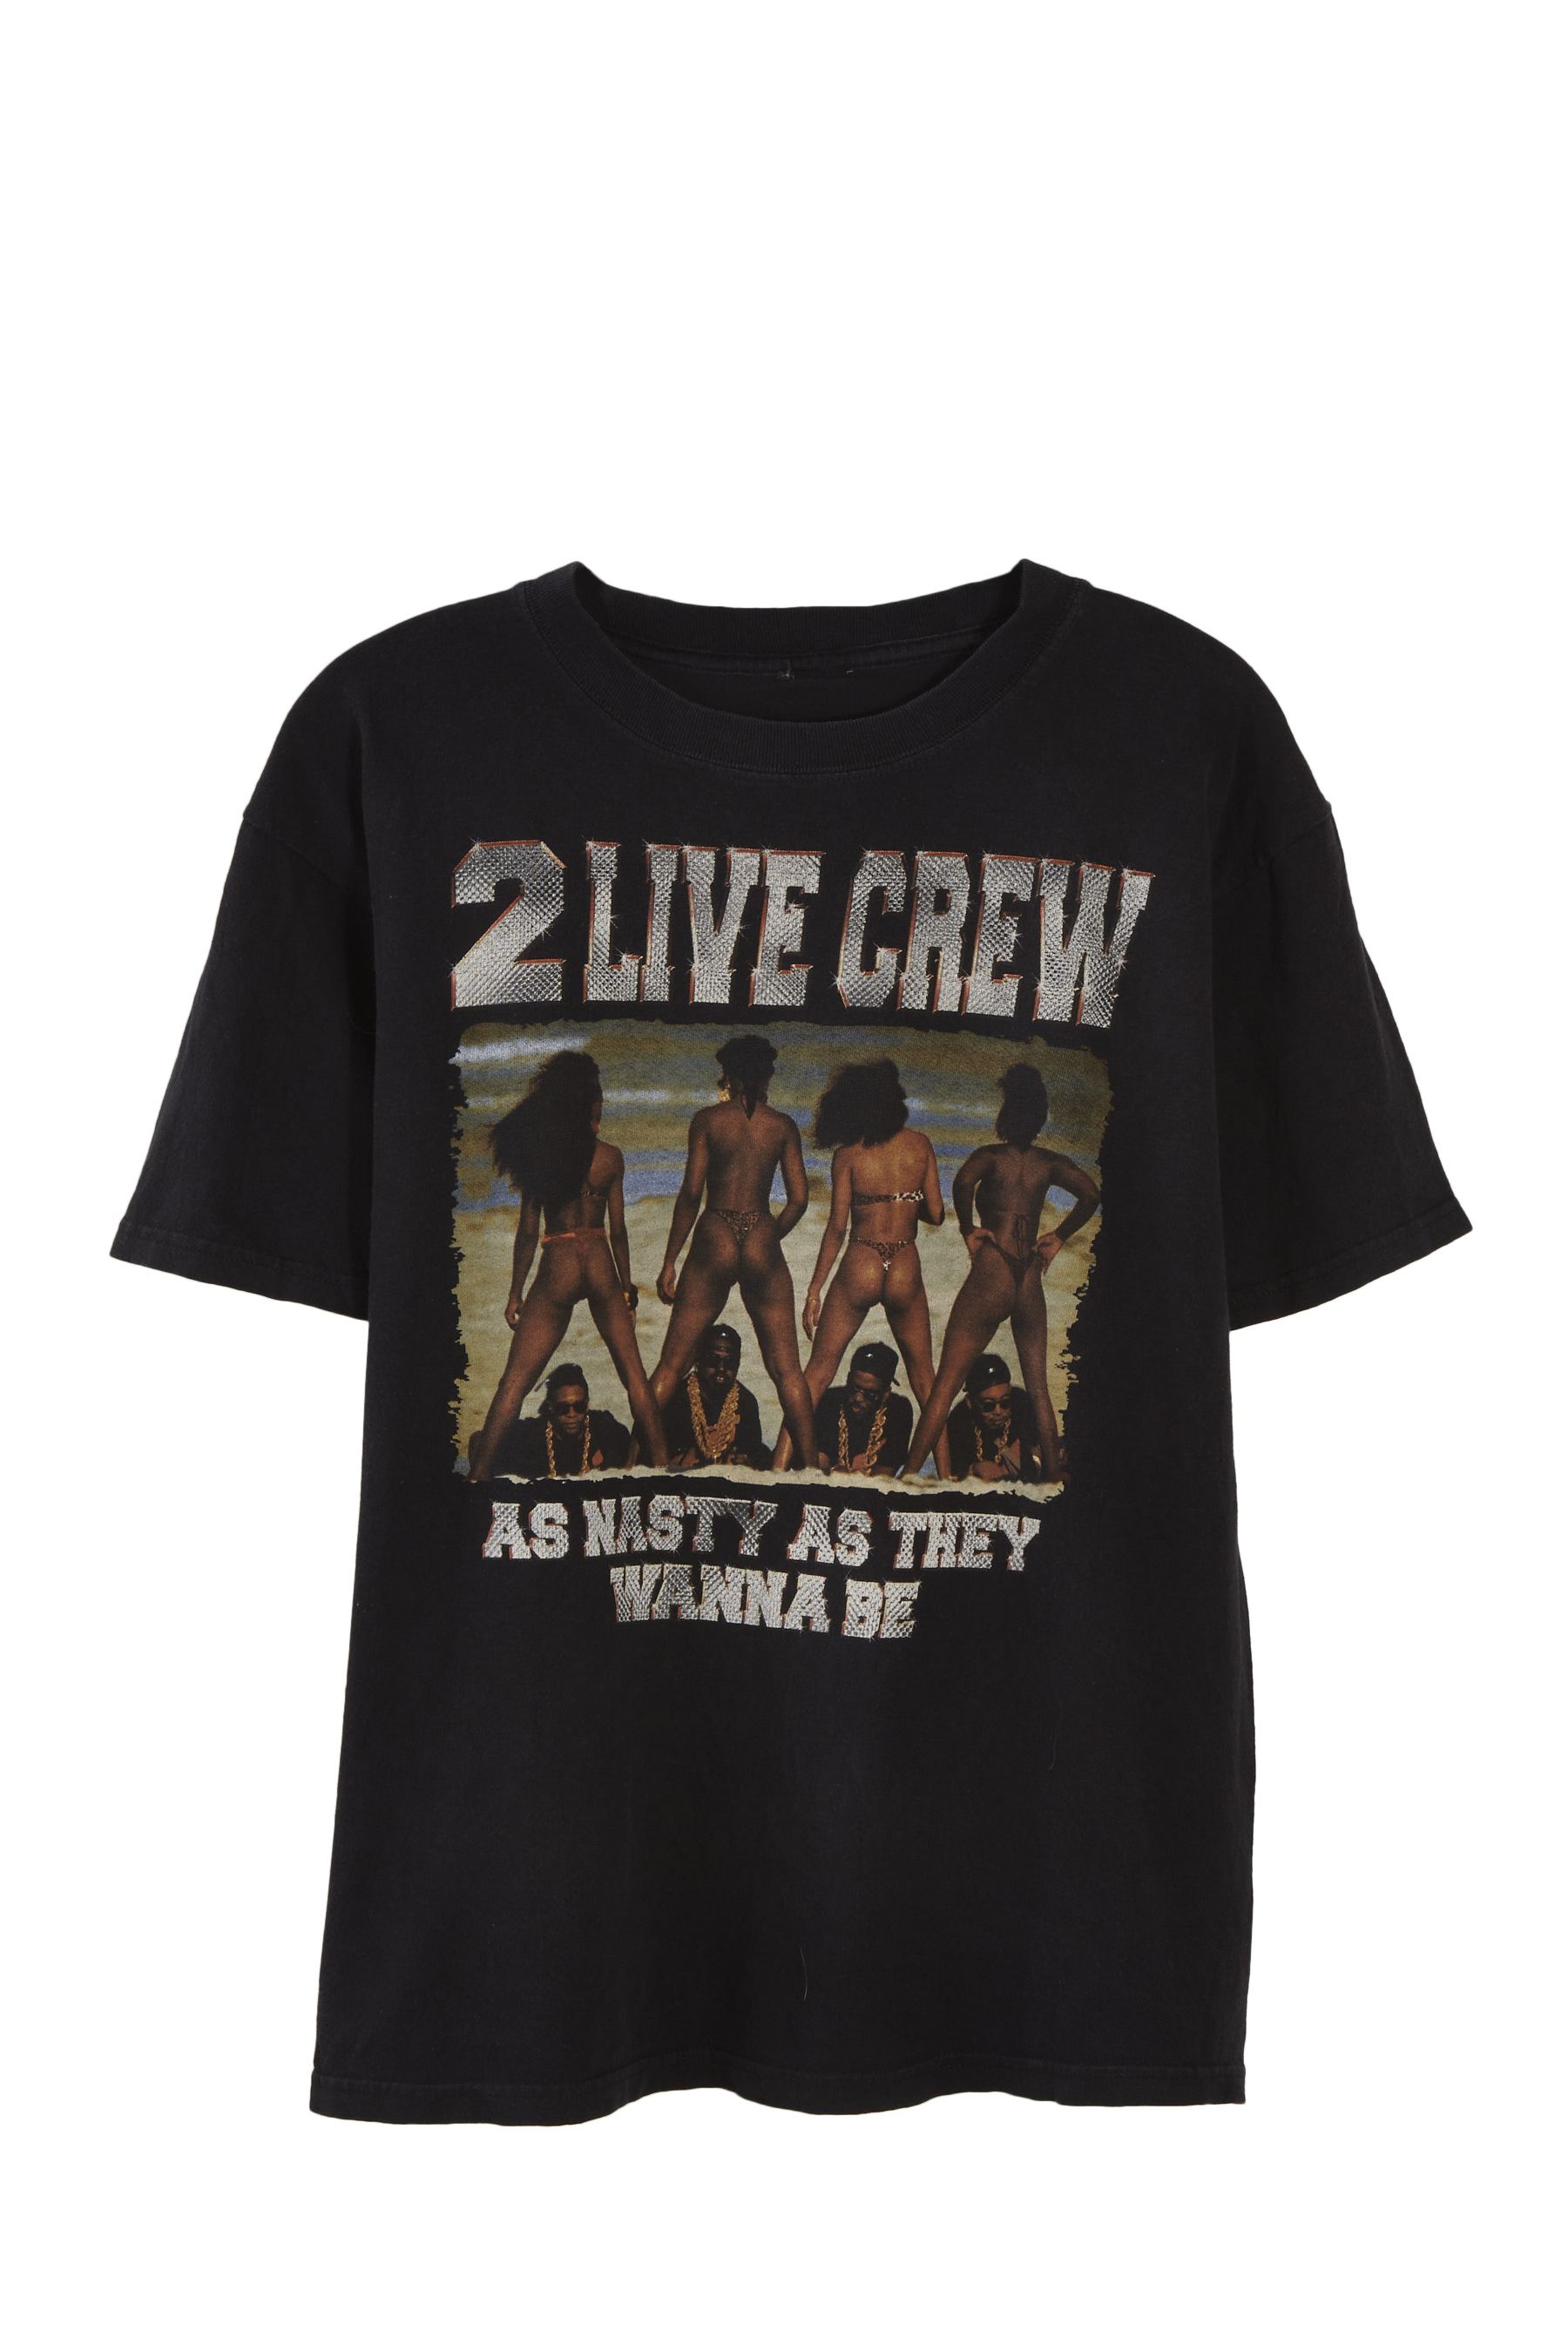 Vintage 2 Live Crew 1990s Album Tee 75MIX-011 | WGACA